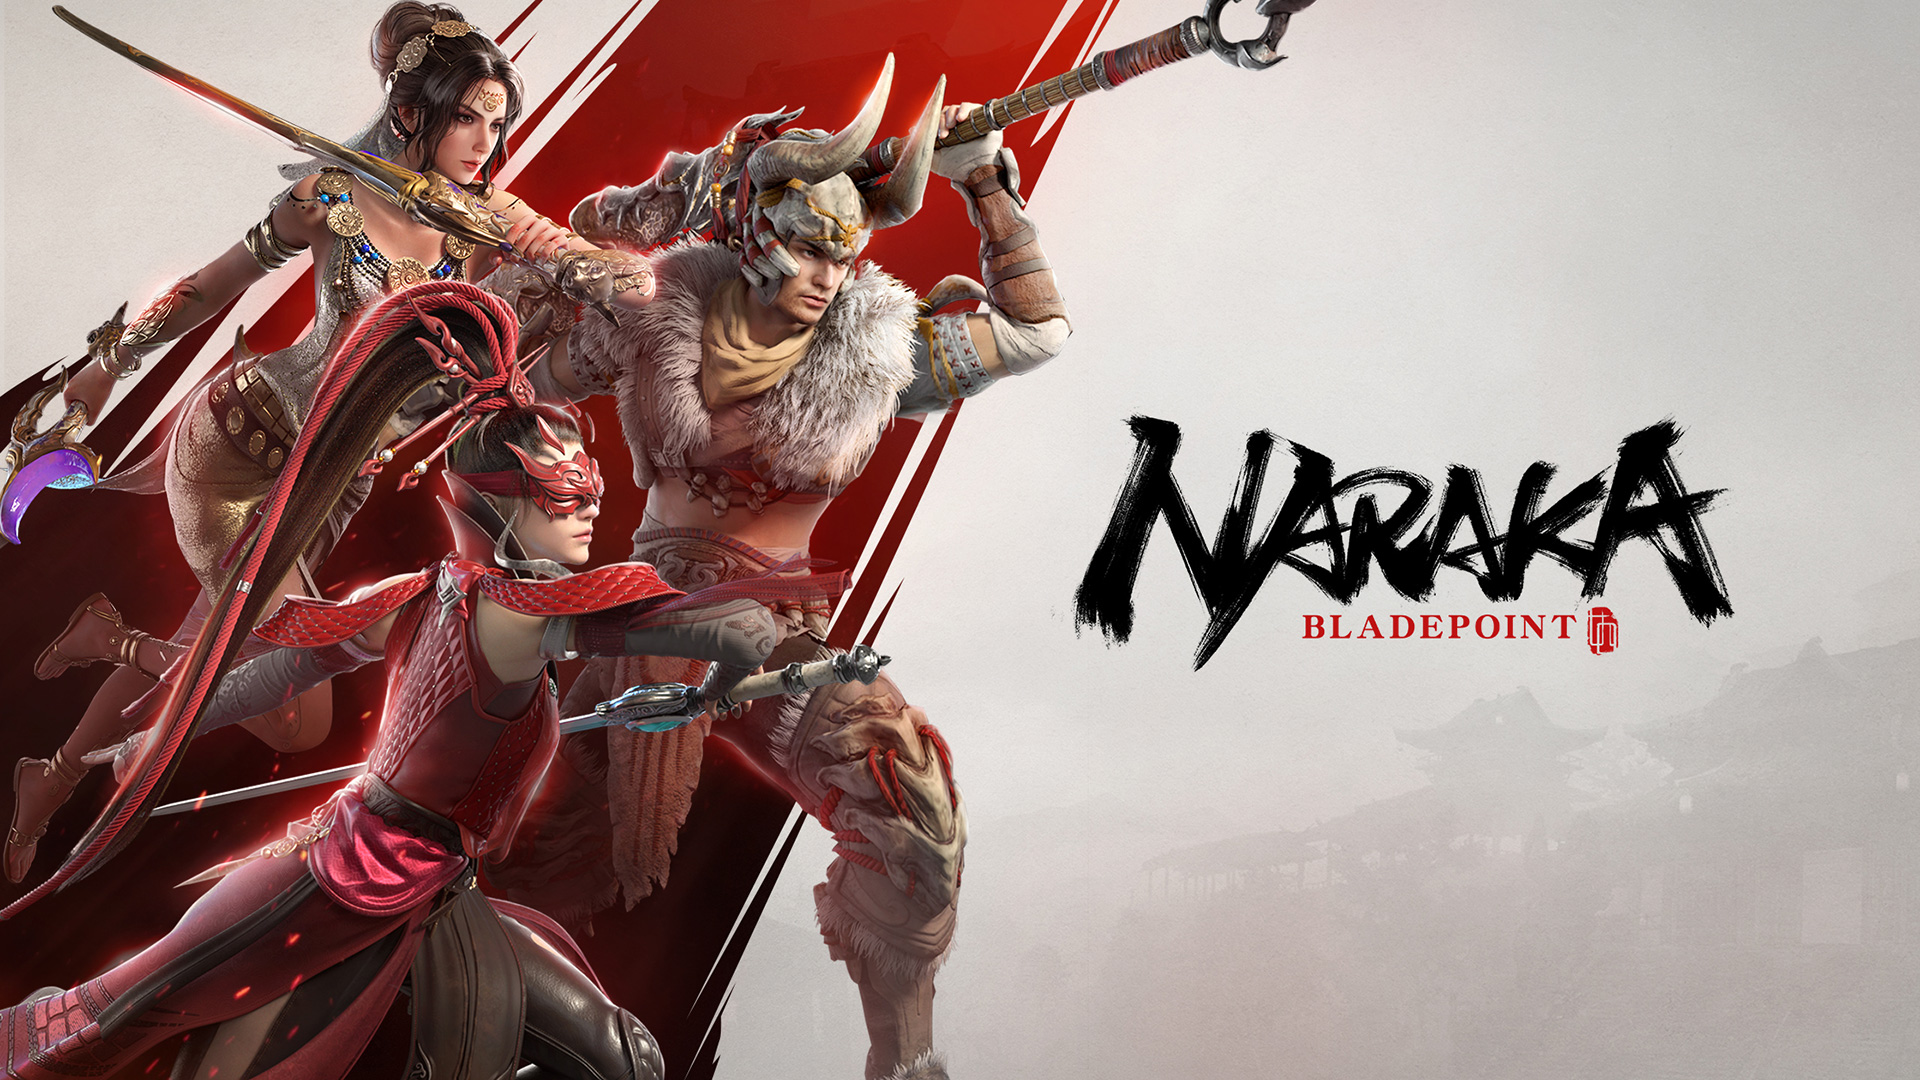 De avontuurlijke battle-royale Naraka: Bladepoint is al door meer dan 40 miljoen spelers gespeeld